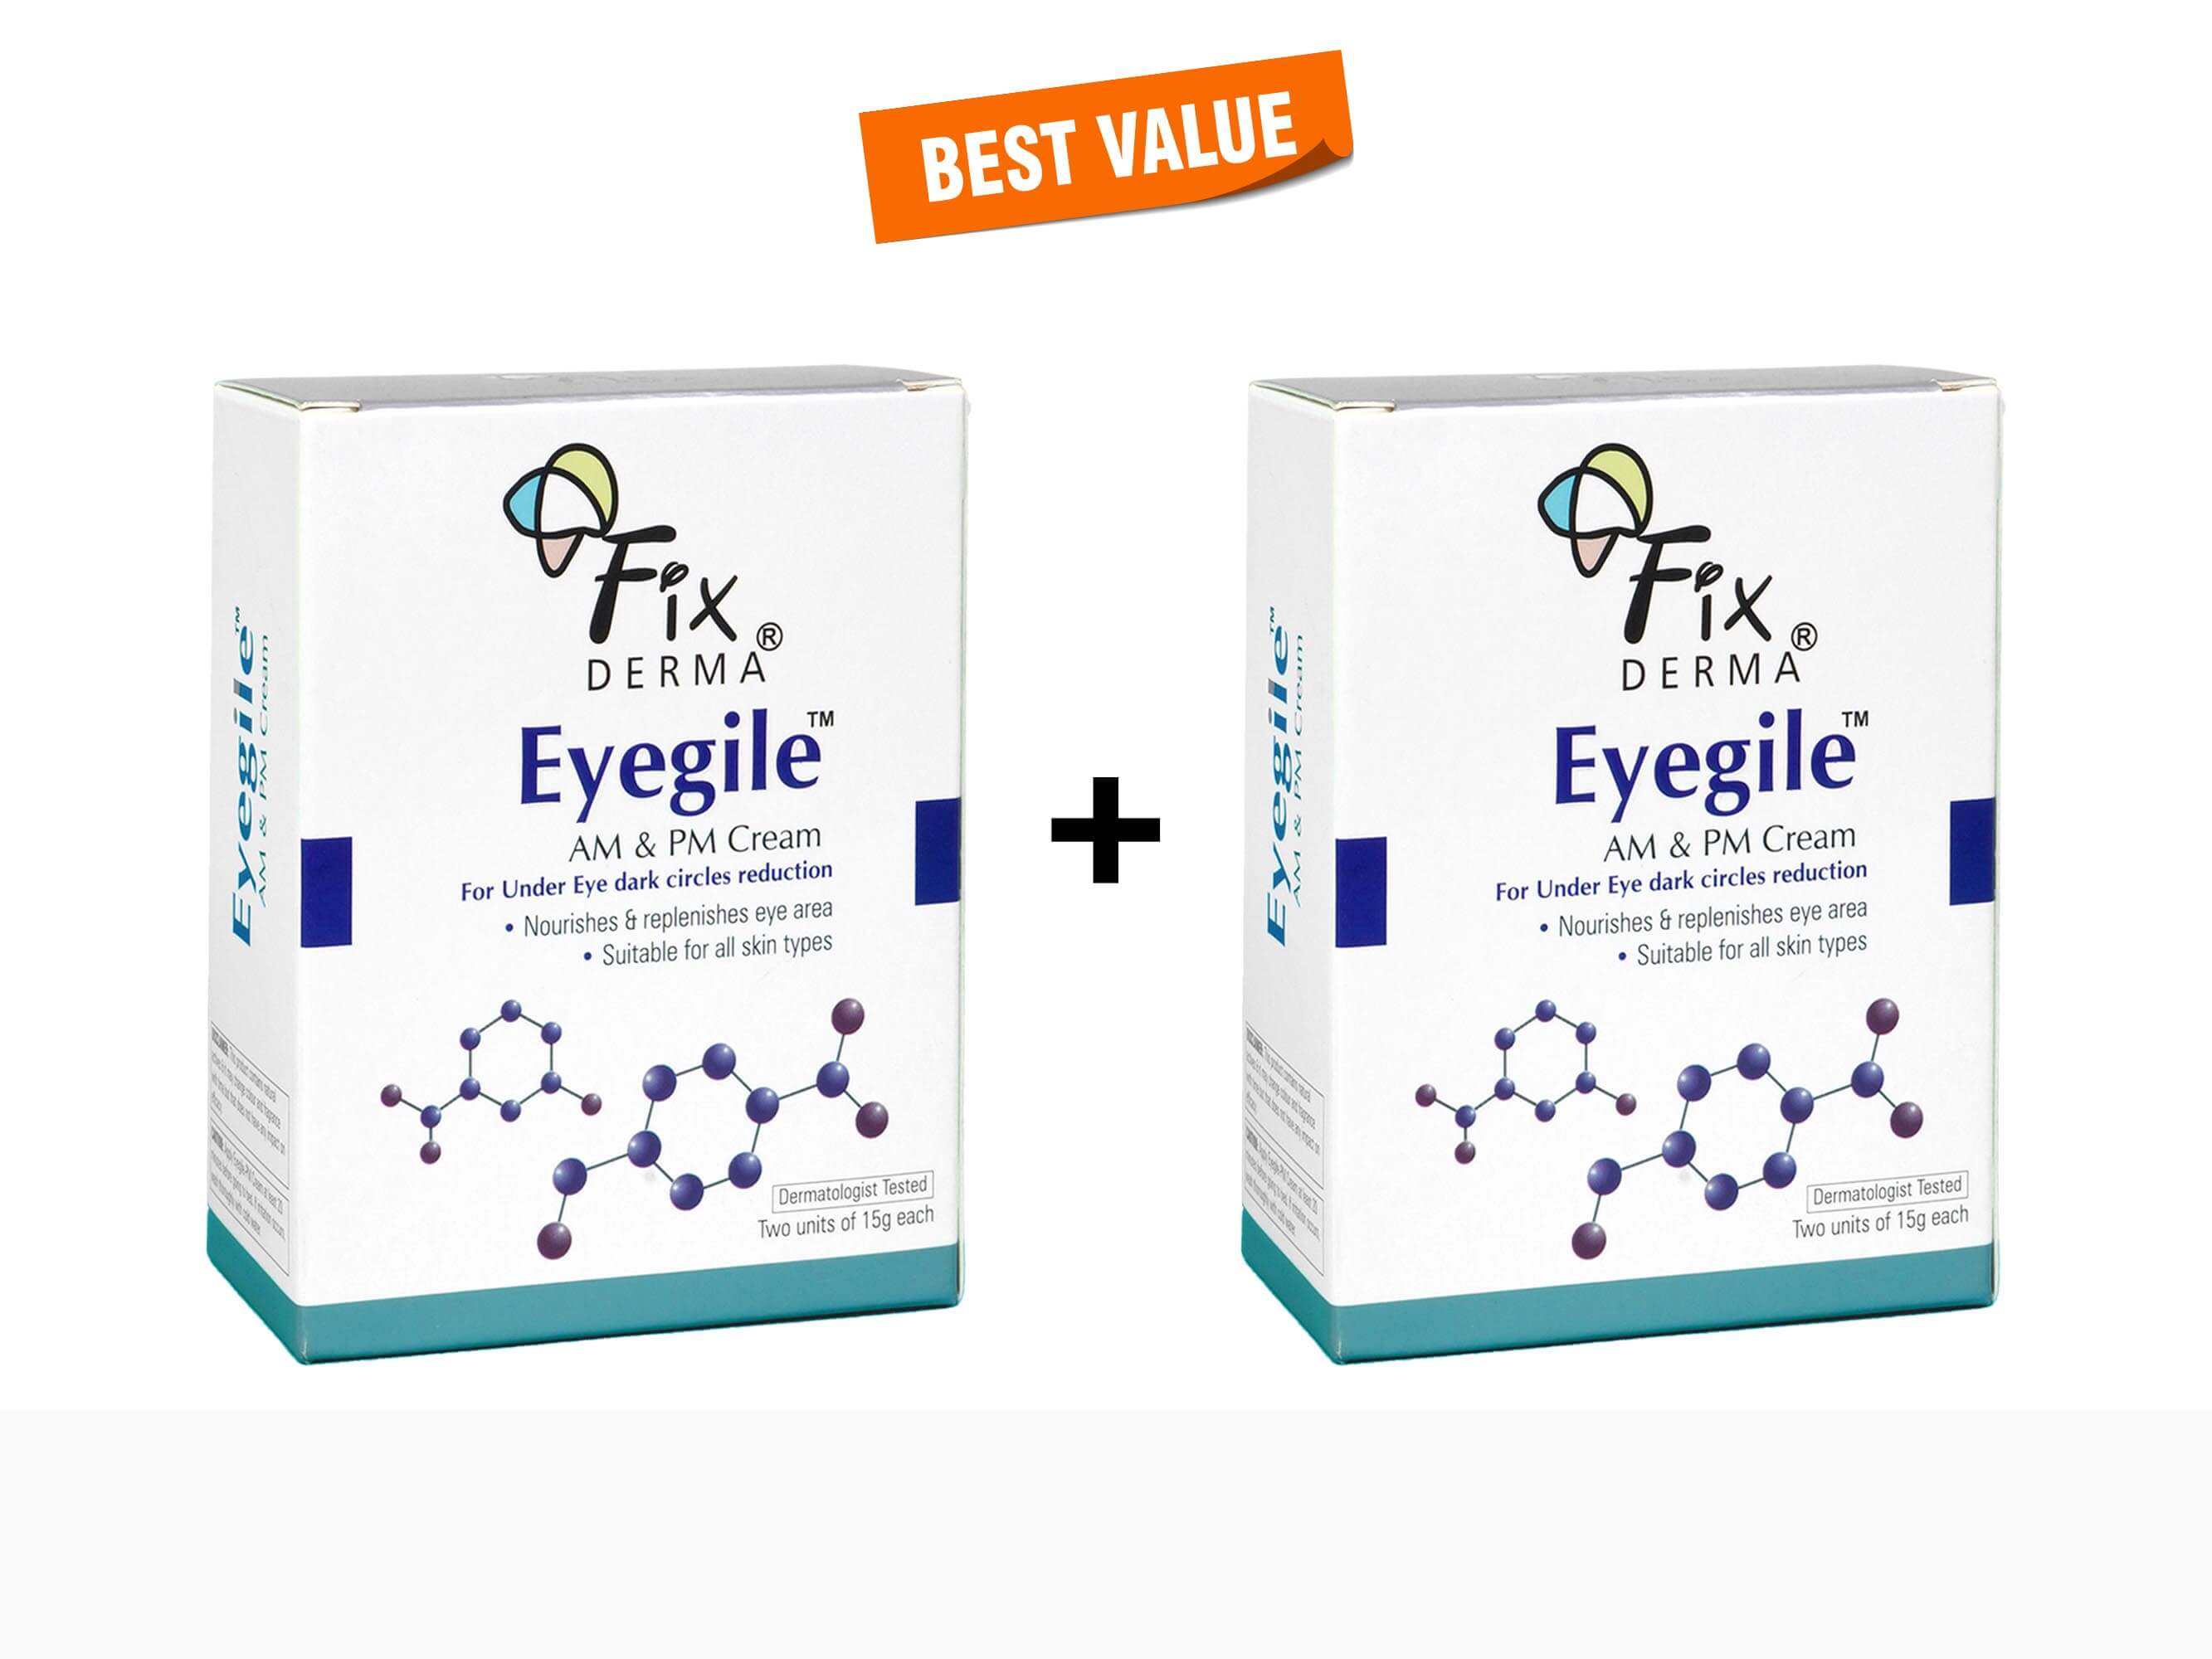 Fixderma Eyegile AM & PM Cream - Clinikally